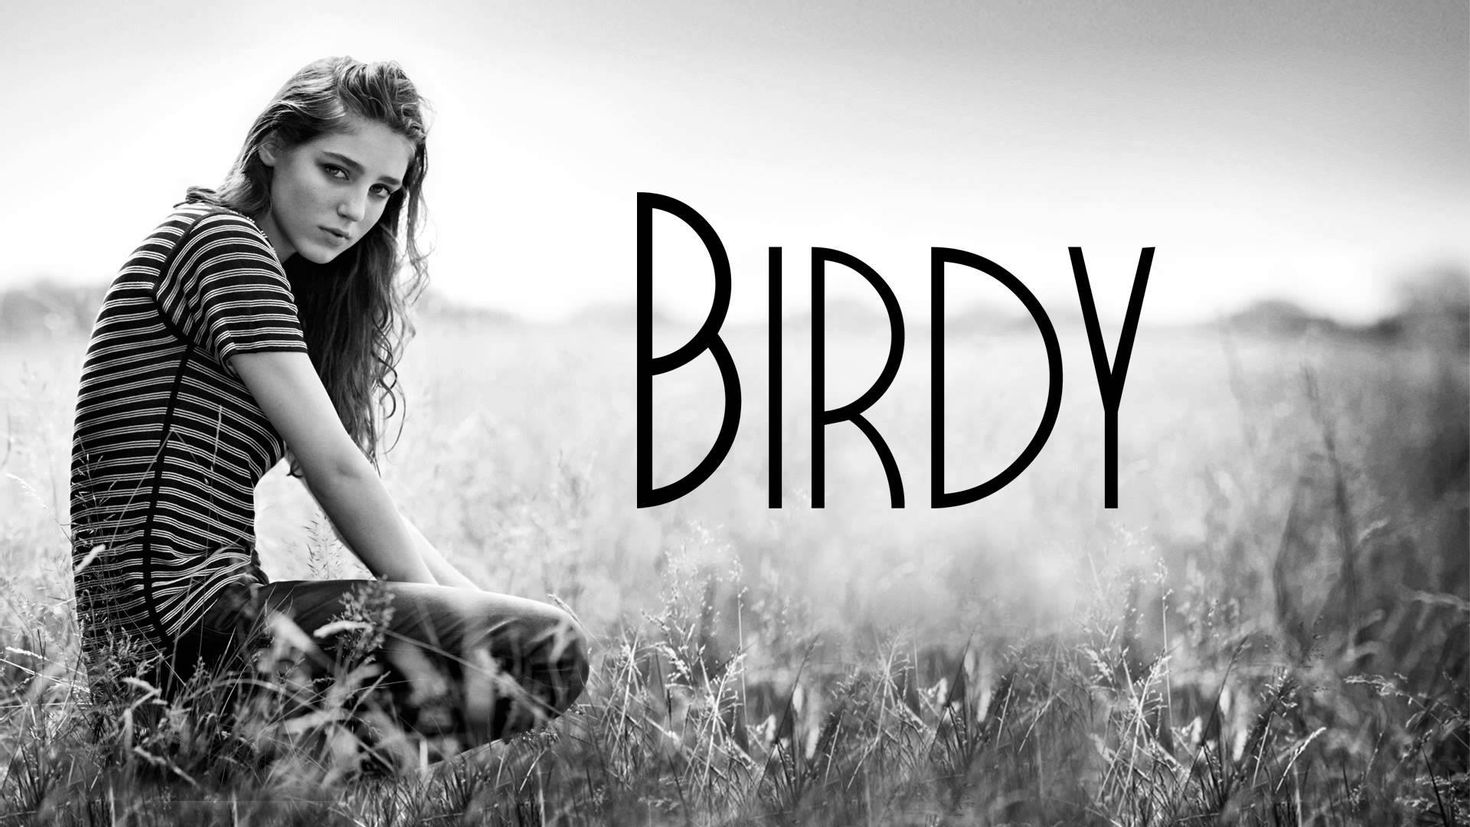 Birdy strange birds. Birdy певица 2021. Birdy артист. Birdy обложки альбомов. Birdy Fire within.